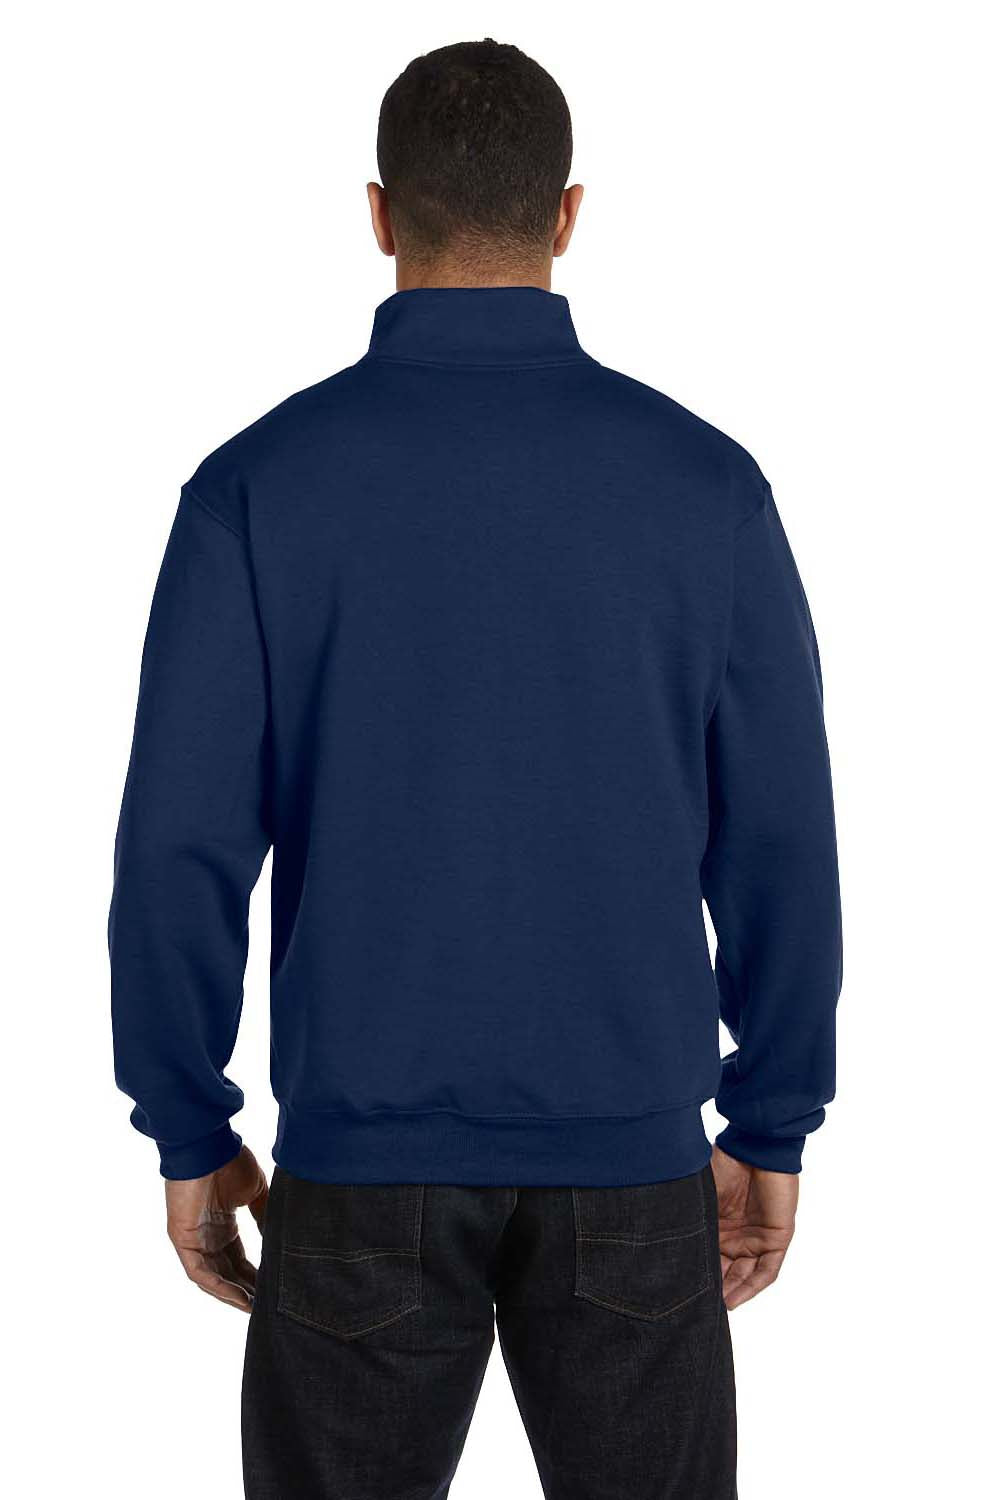 Jerzees 995M Mens NuBlend Fleece 1/4 Zip Sweatshirt Navy Blue Back